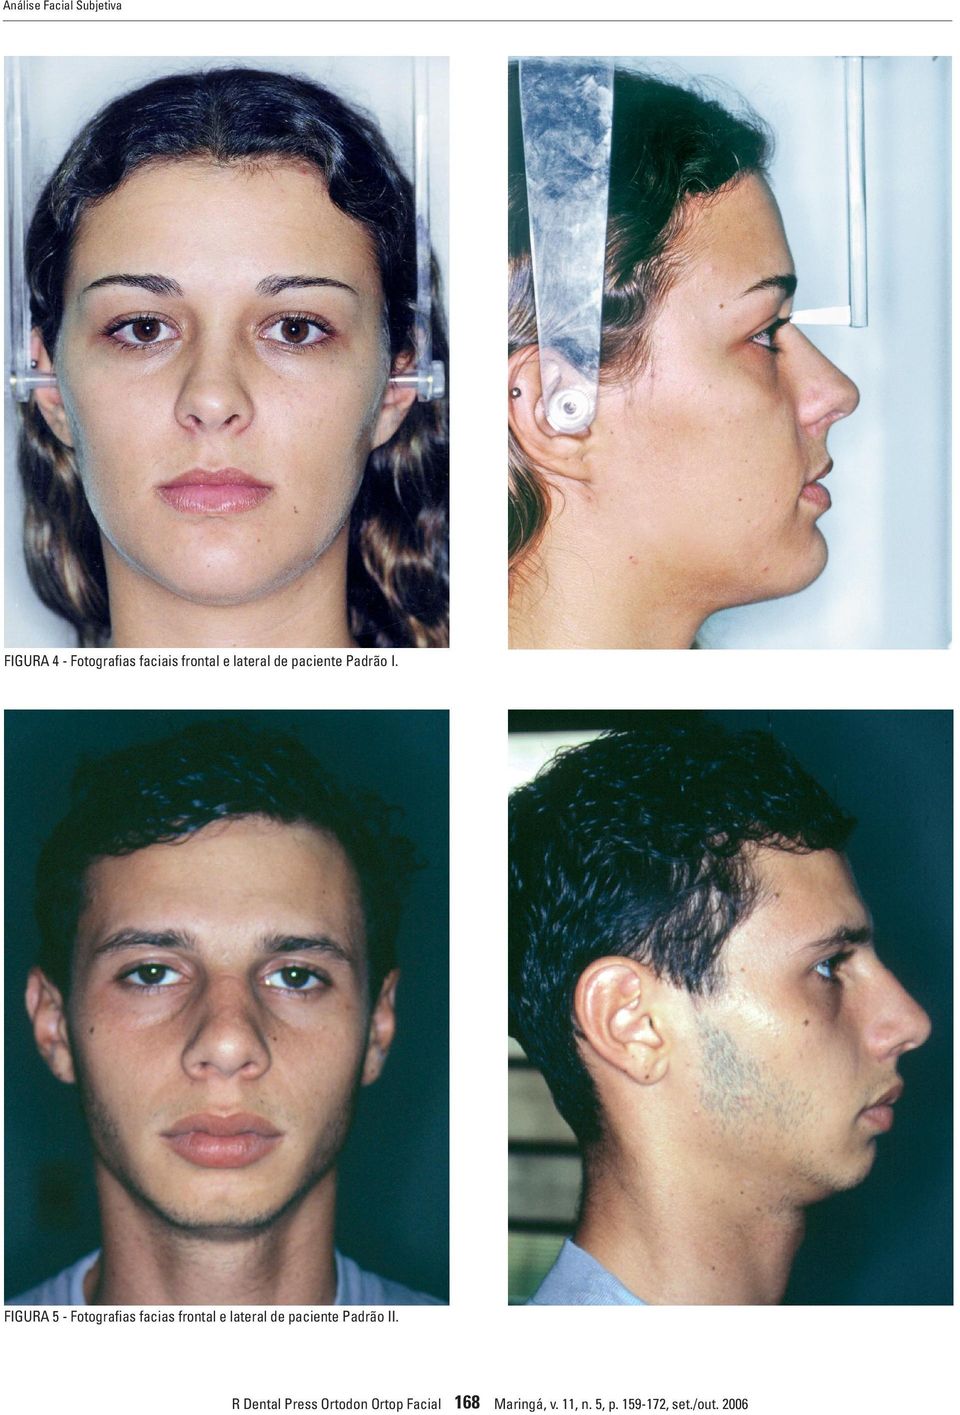 FIGURA 5 - Fotografias facias frontal e lateral de paciente